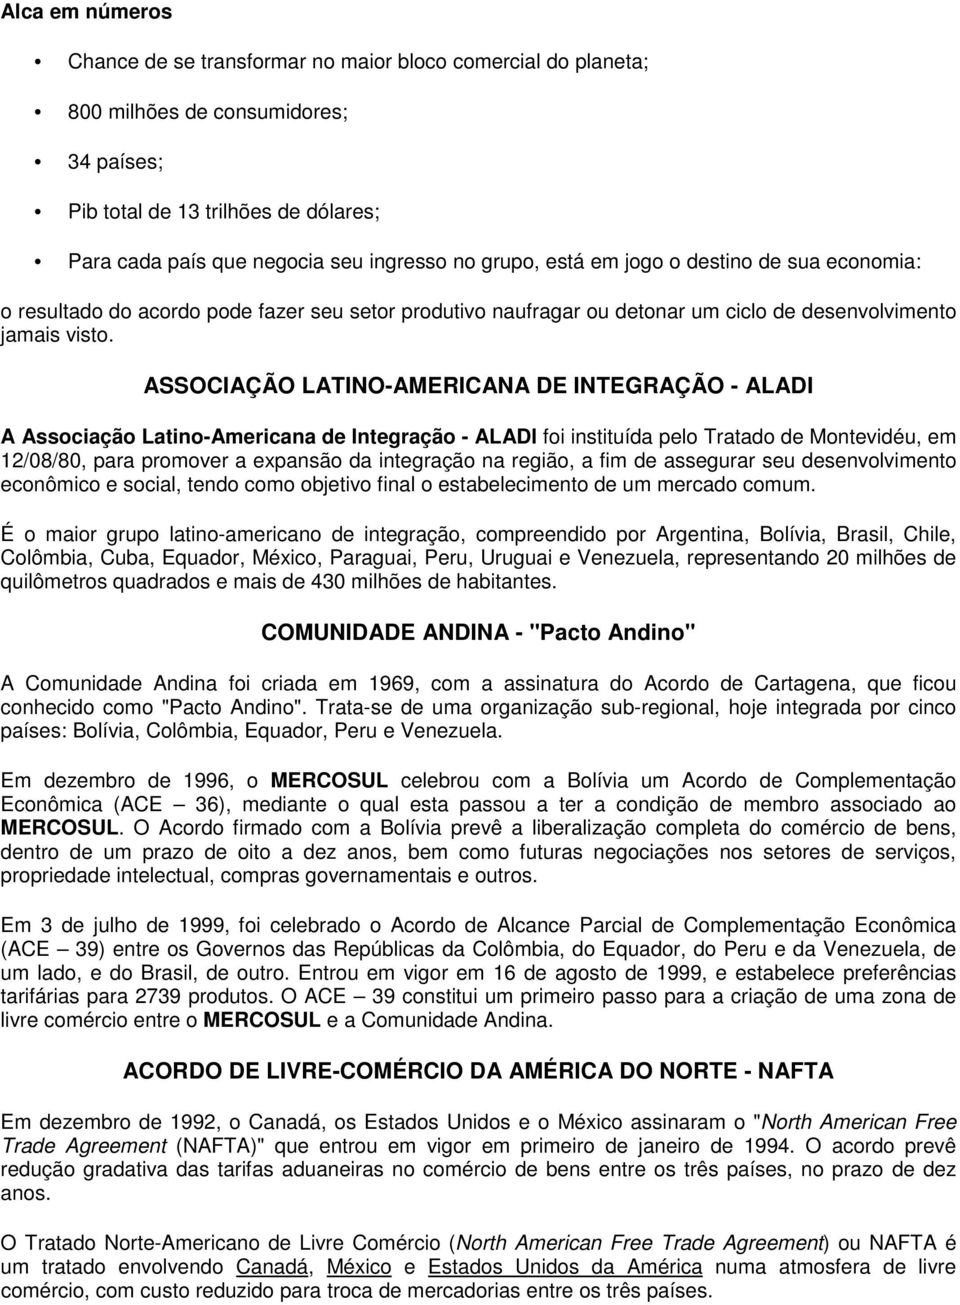 ASSOCIAÇÃO LATINO-AMERICANA DE INTEGRAÇÃO - ALADI A Associação Latino-Americana de Integração - ALADI foi instituída pelo Tratado de Montevidéu, em 12/08/80, para promover a expansão da integração na